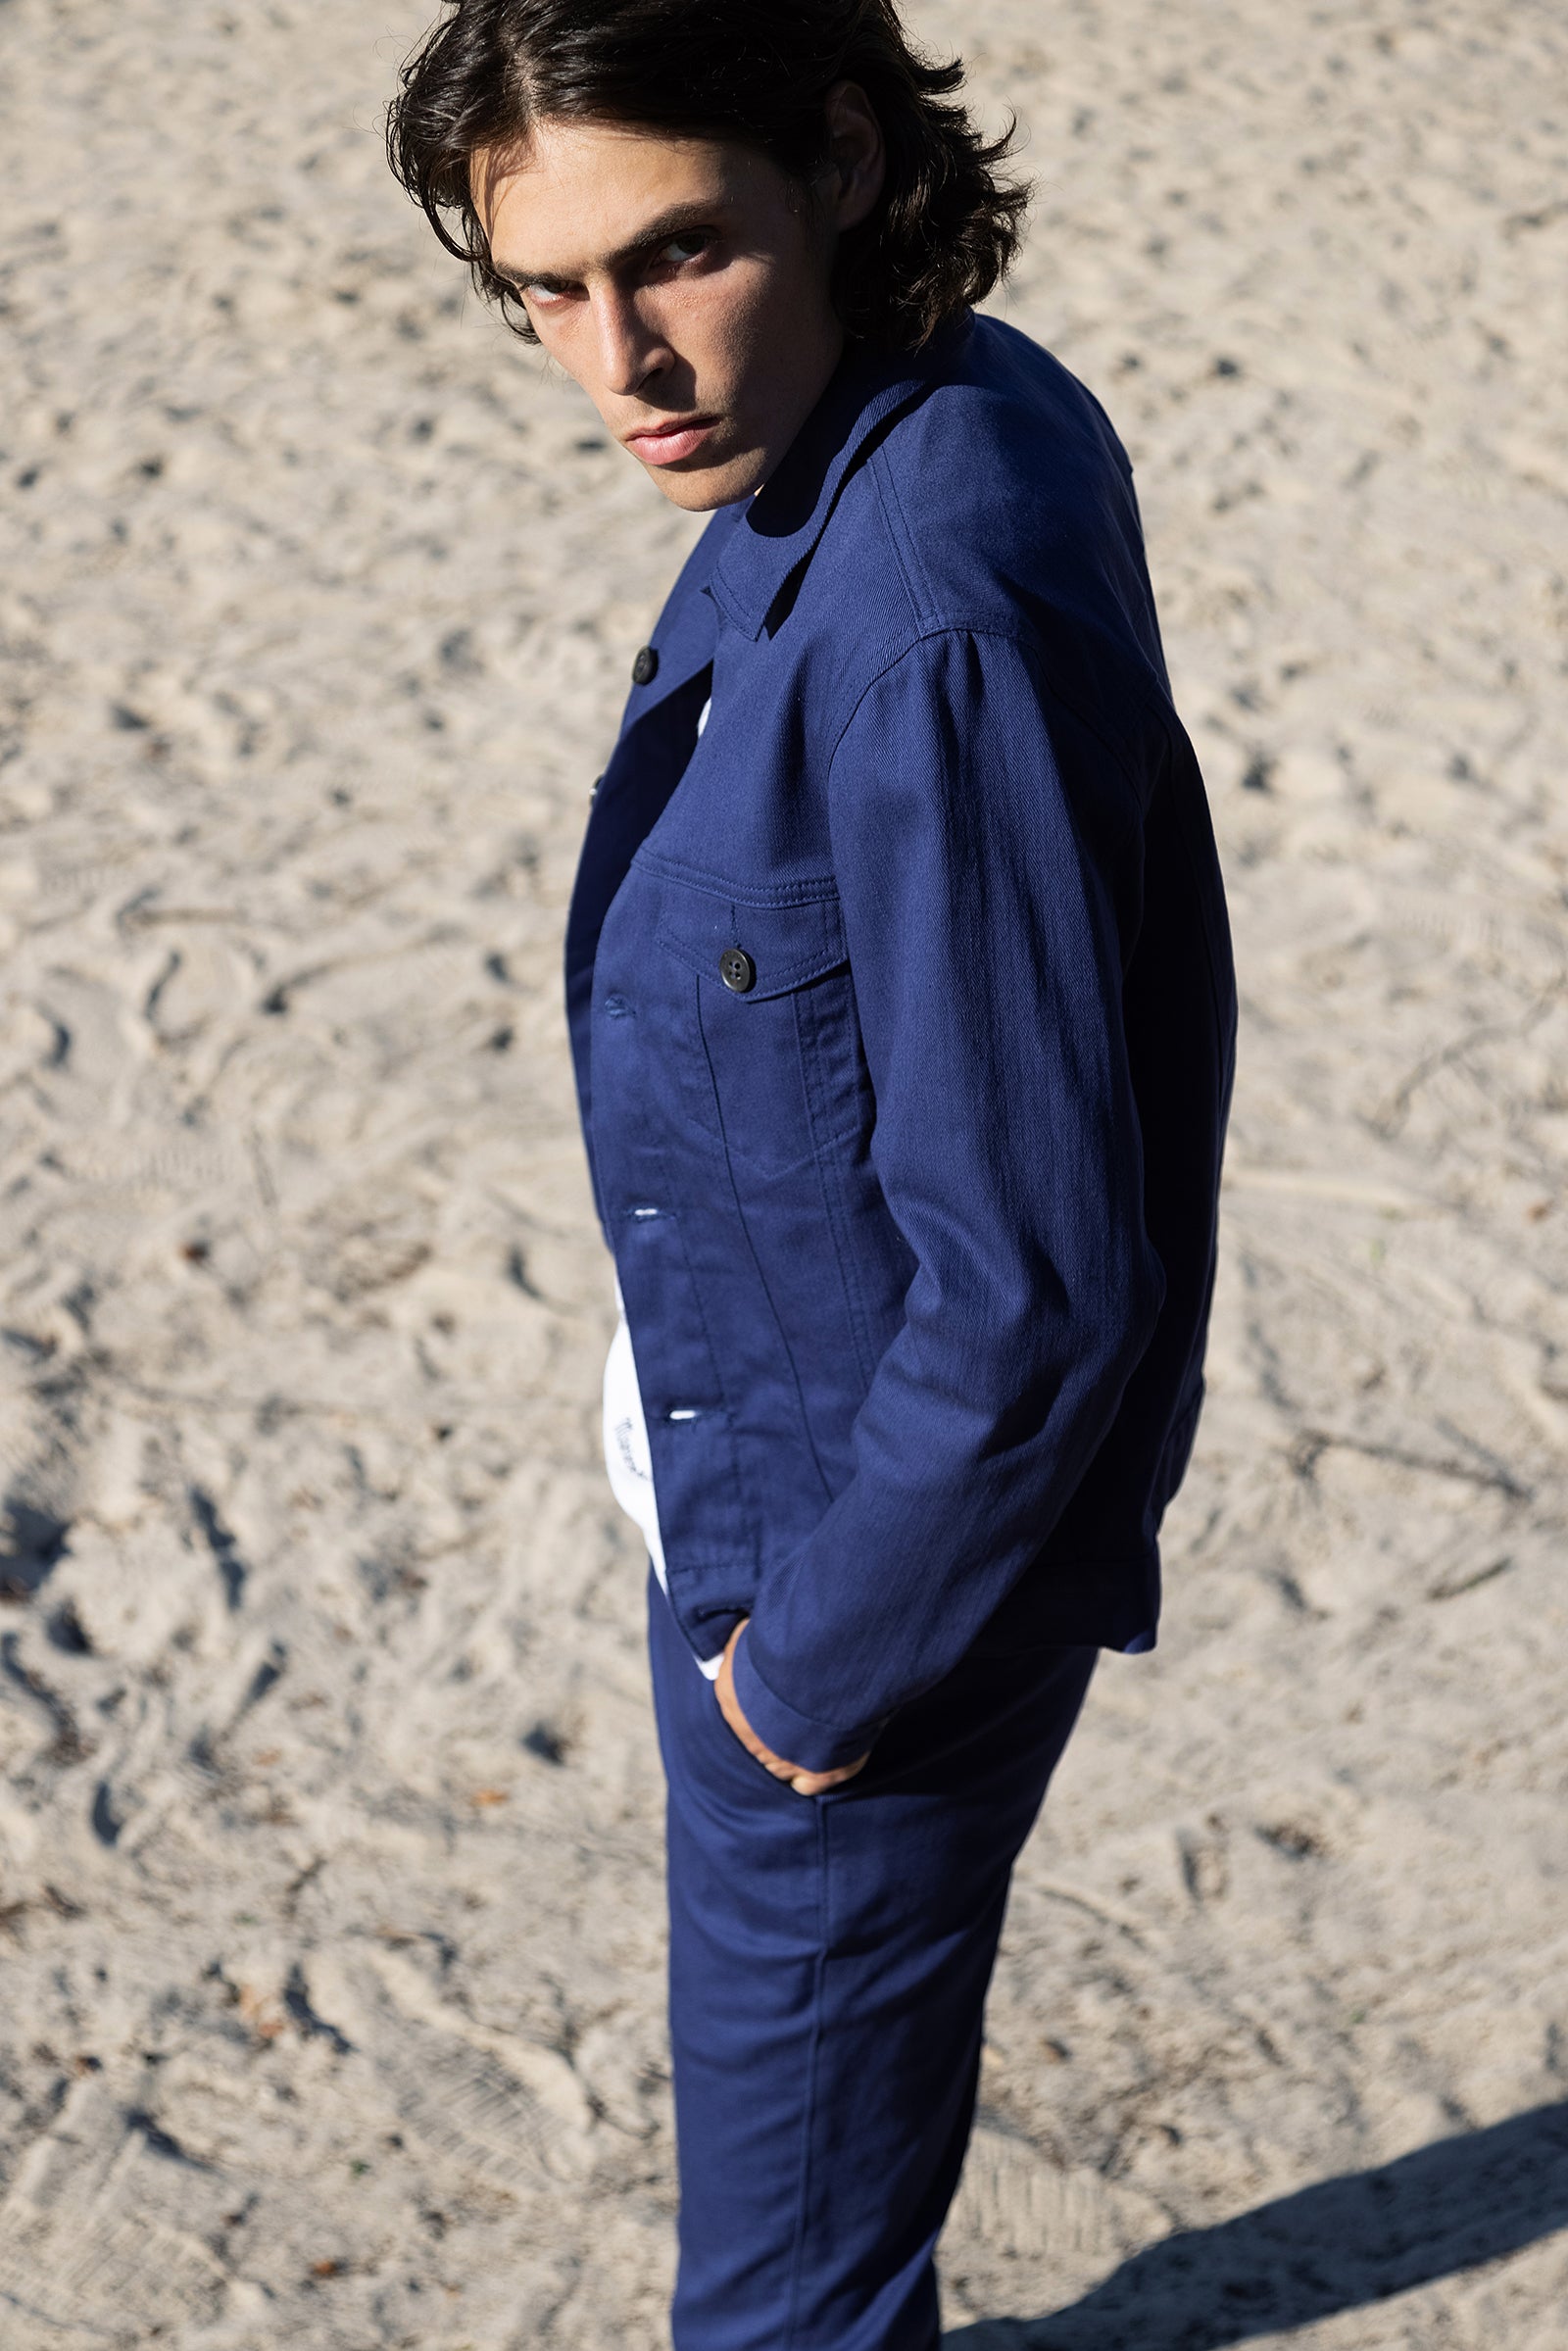 Indigo Blue Chino Jacket Suit Straight Cut Multiple Pockets Work Jacket